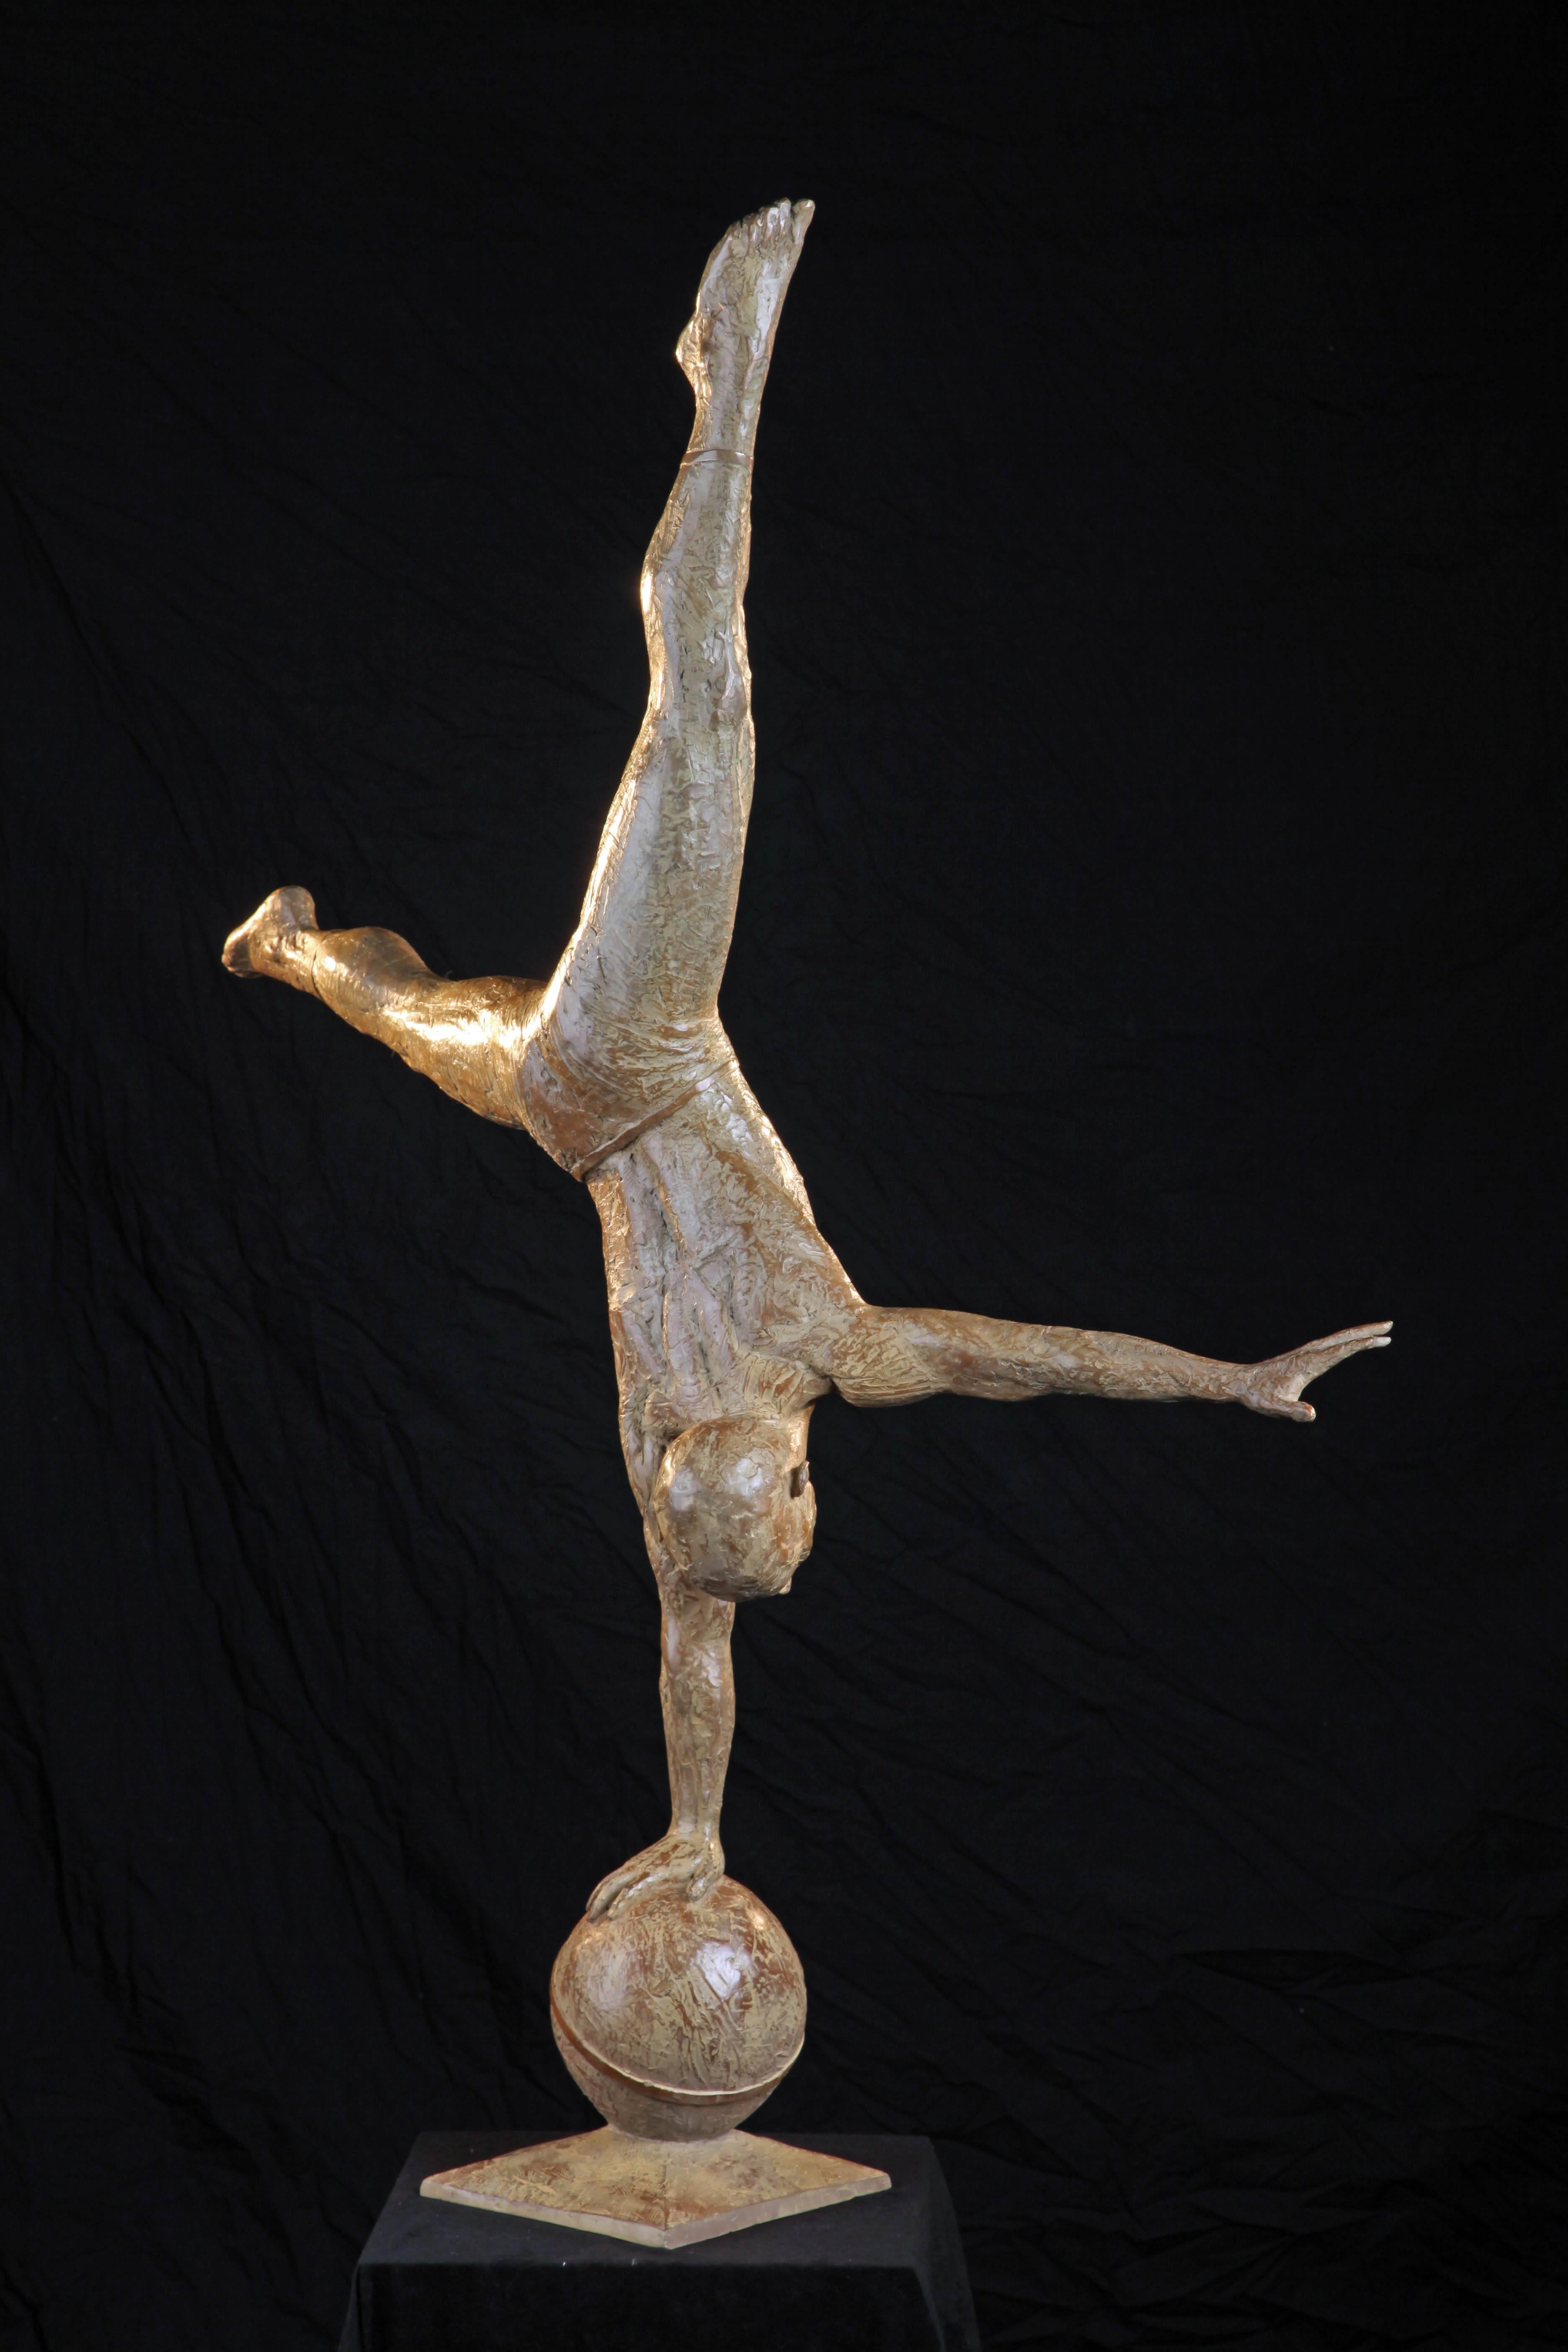 Balancing Act - Sculpture by Bill Starke